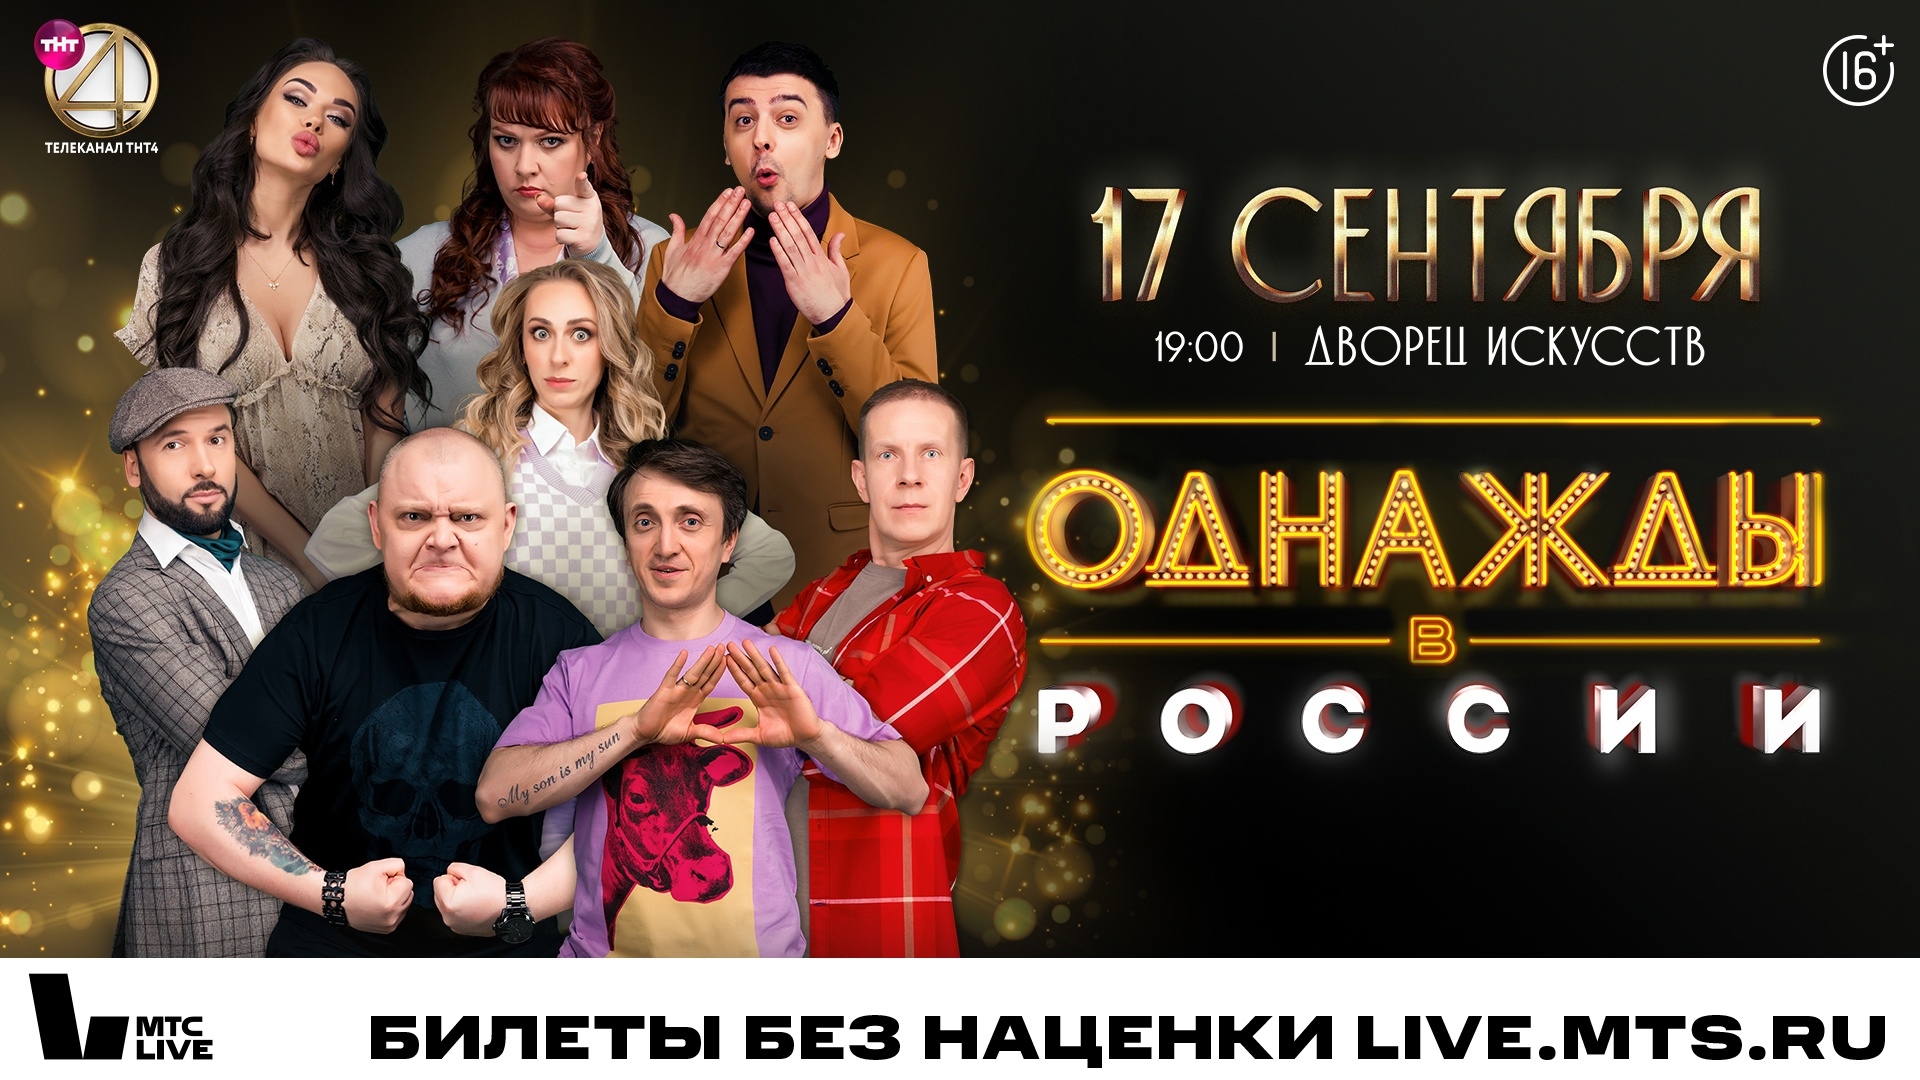 Во Дворце искусств 17 сентября состоится шоу «Однажды в России»